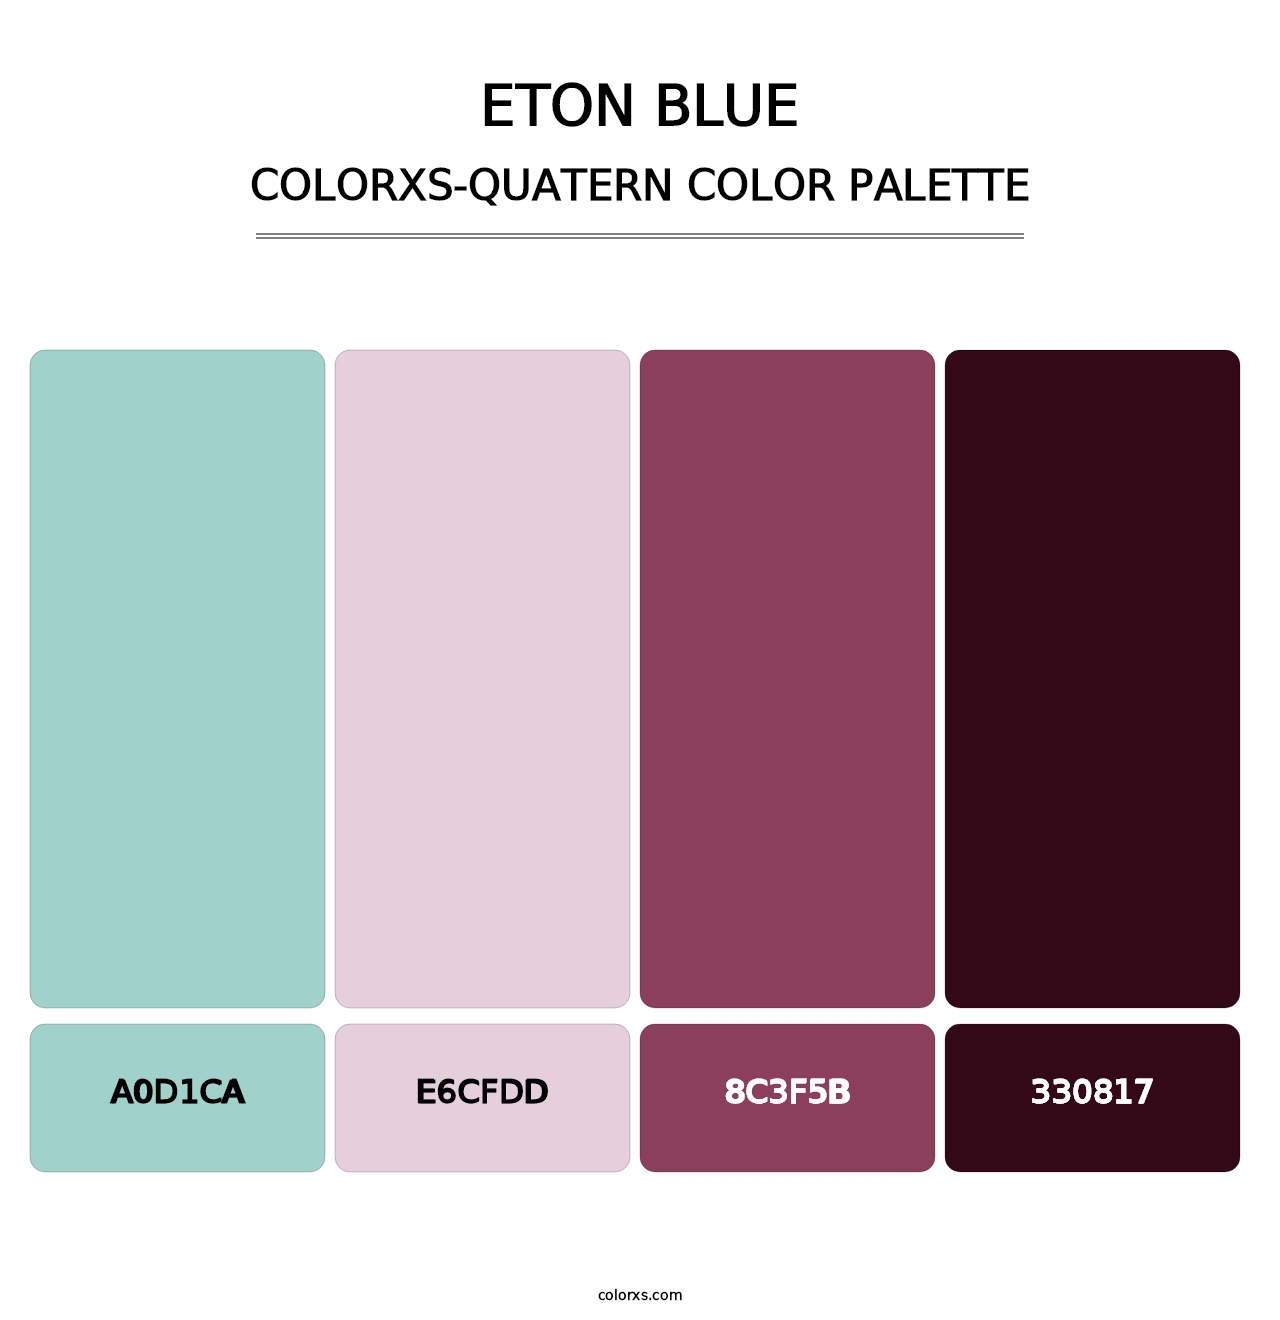 Eton blue - Colorxs Quatern Palette